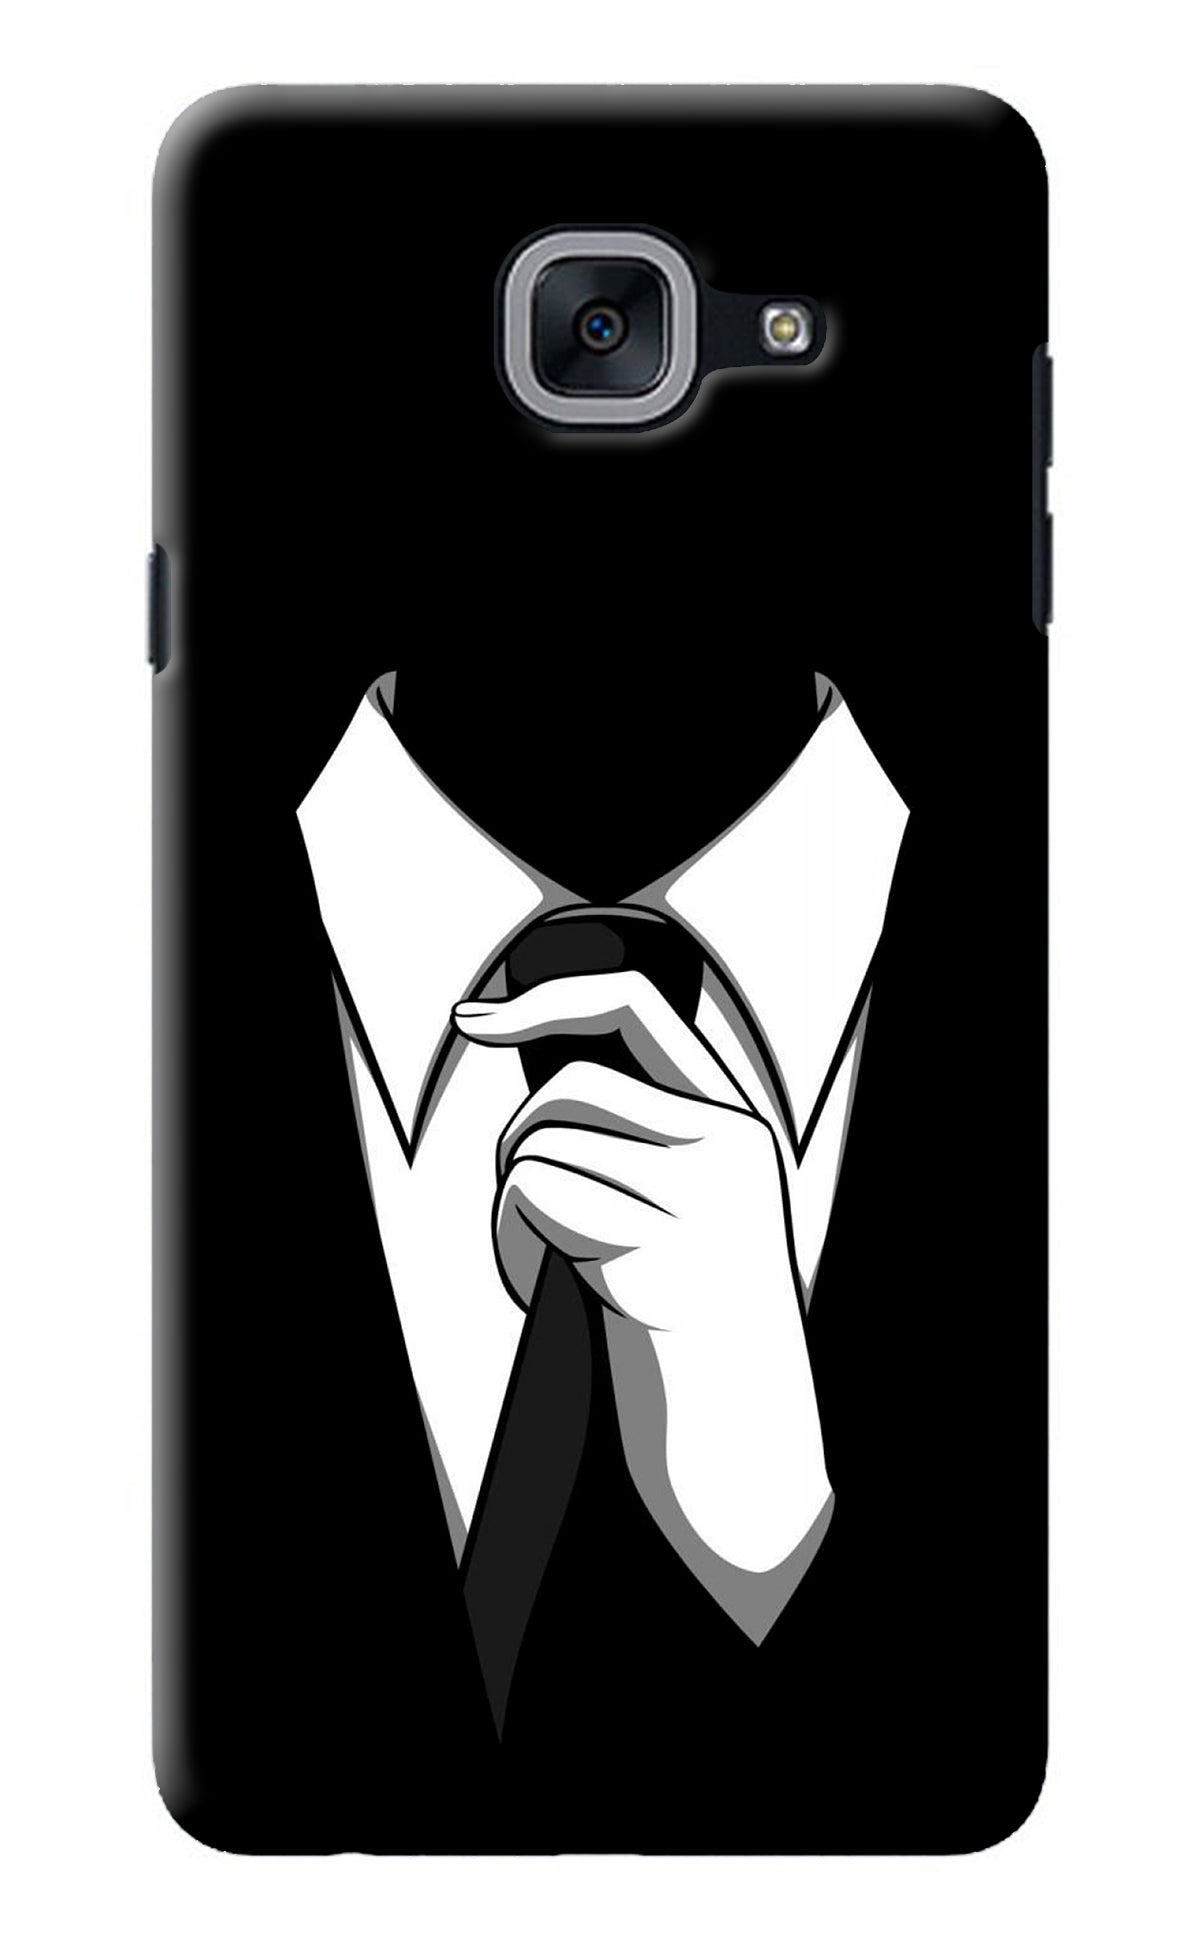 Black Tie Samsung J7 Max Back Cover